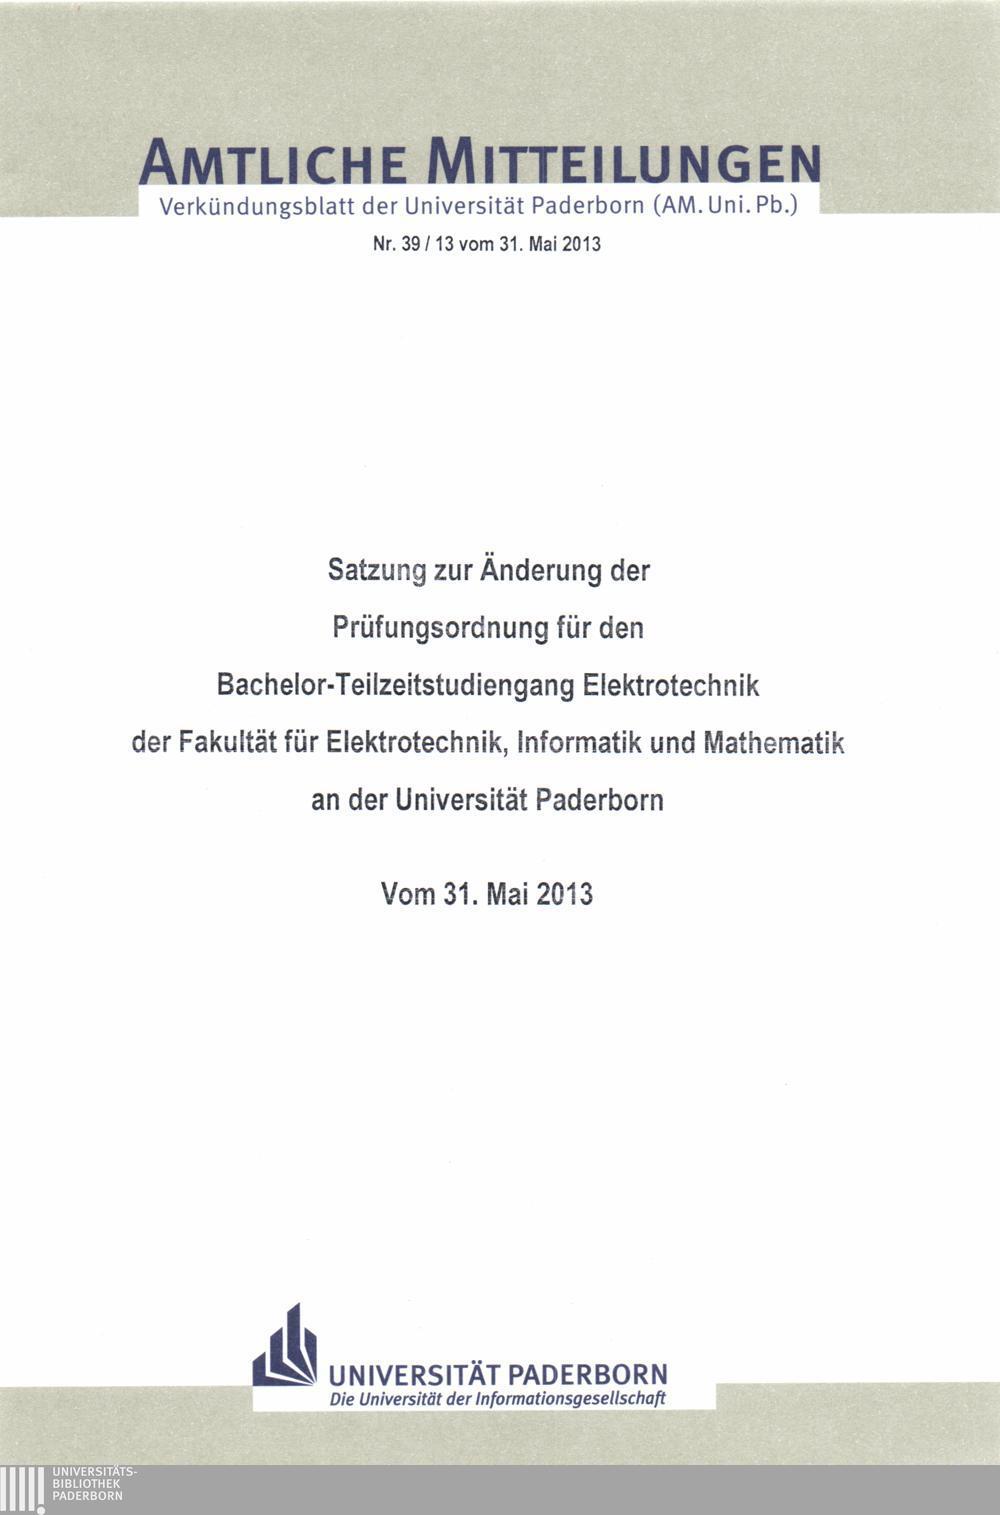 Amtliche Mitteilungen Verkündungsblatt der Universität Paderborn (AM. Uni. Pb.) Nr. 39/13 vom 31.